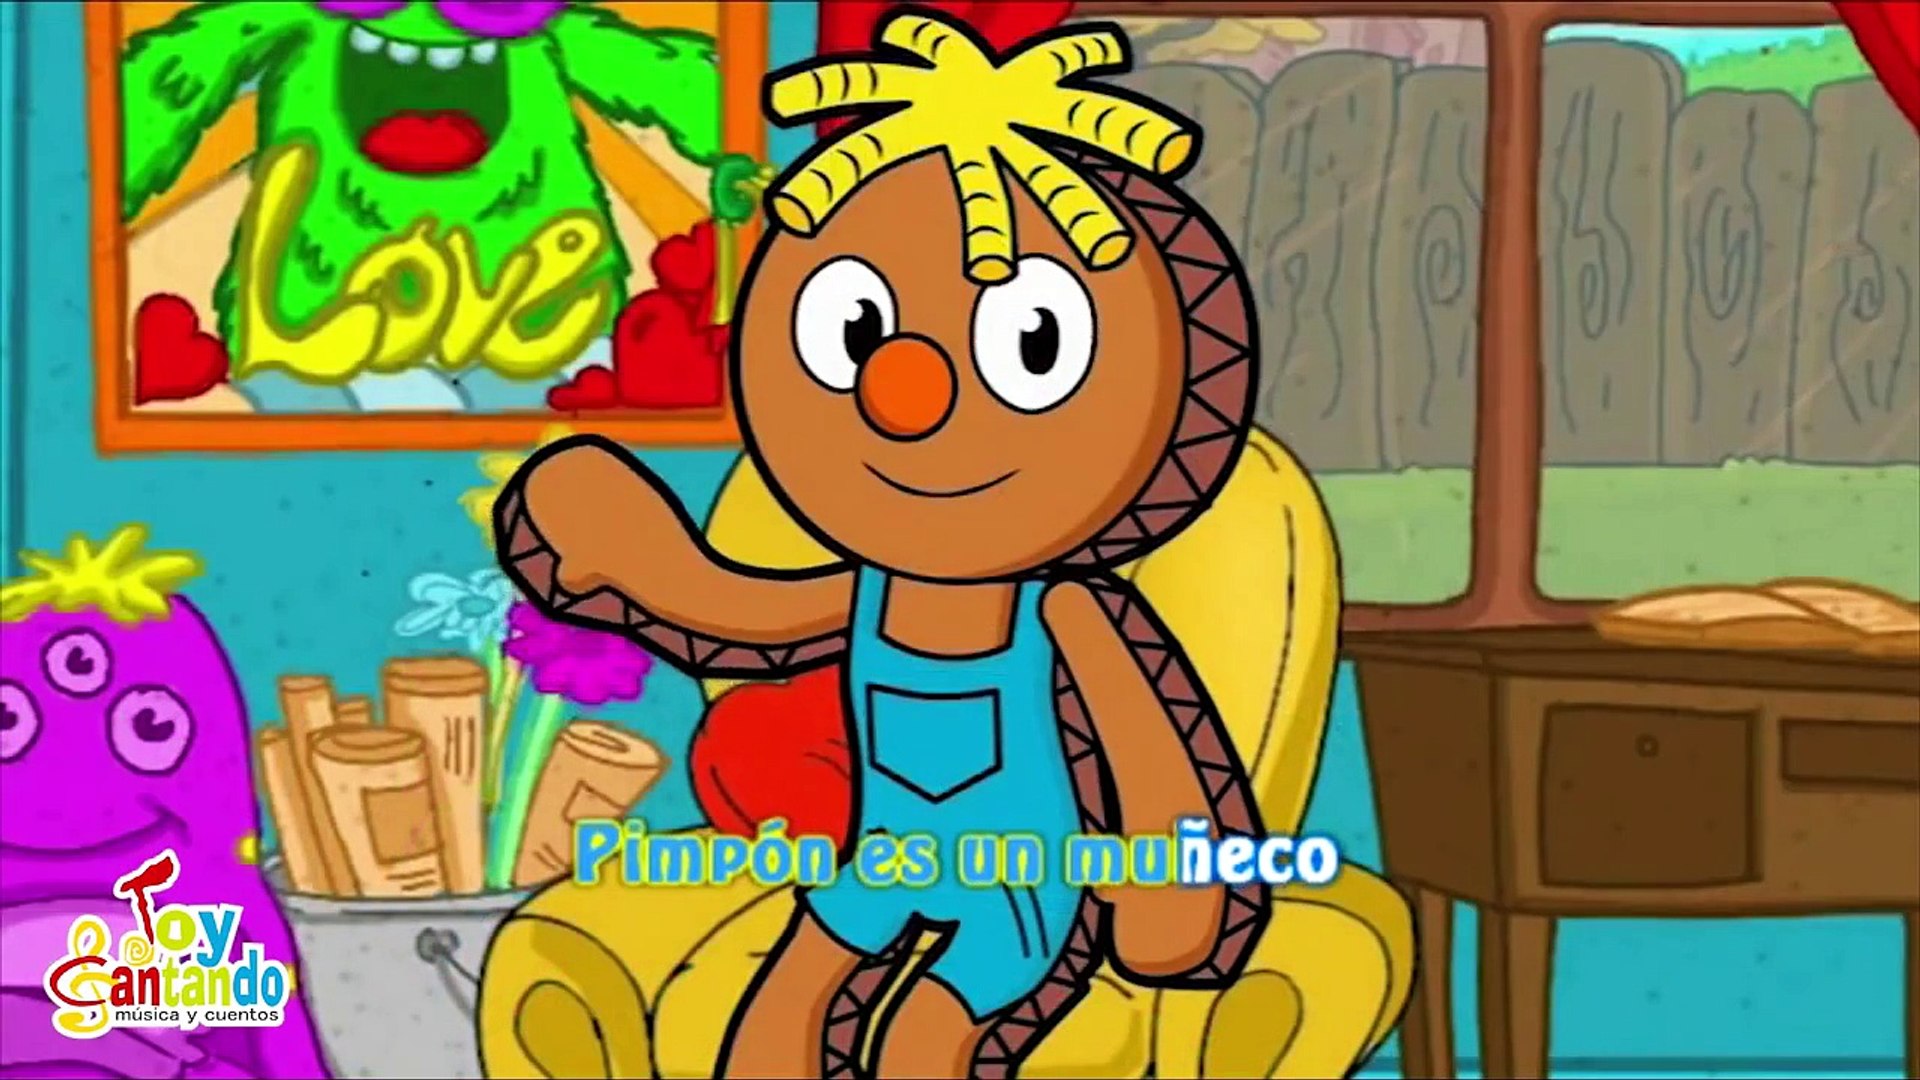 Pin Pon es un muñeco canciones infantiles - Dailymotion Video